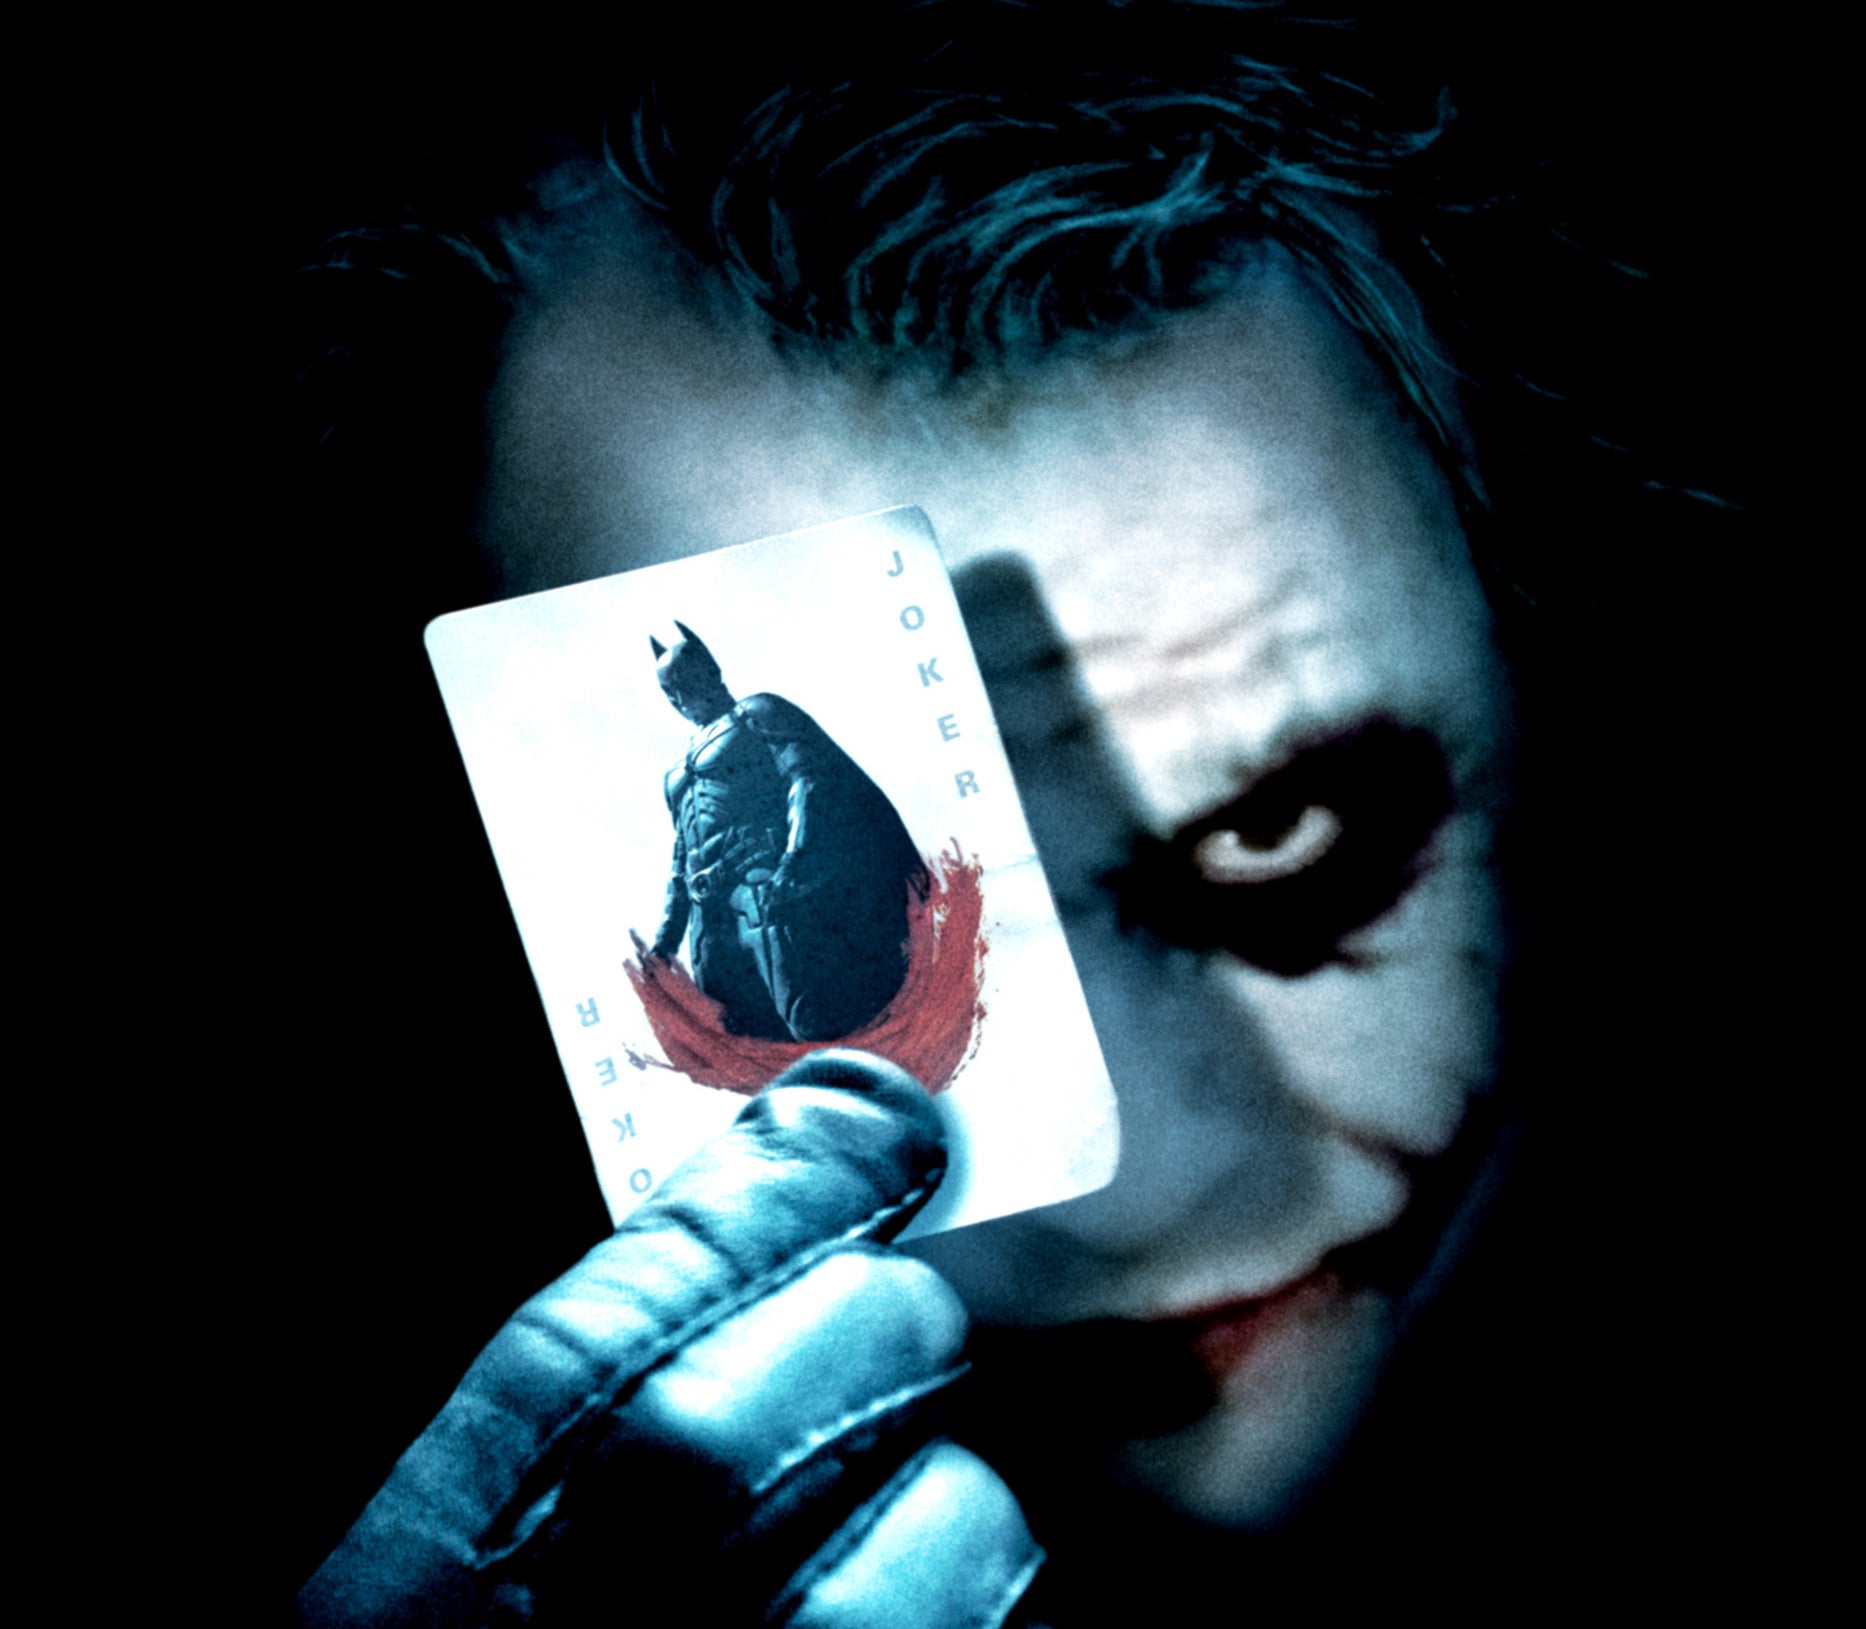 Closeup of the Joker